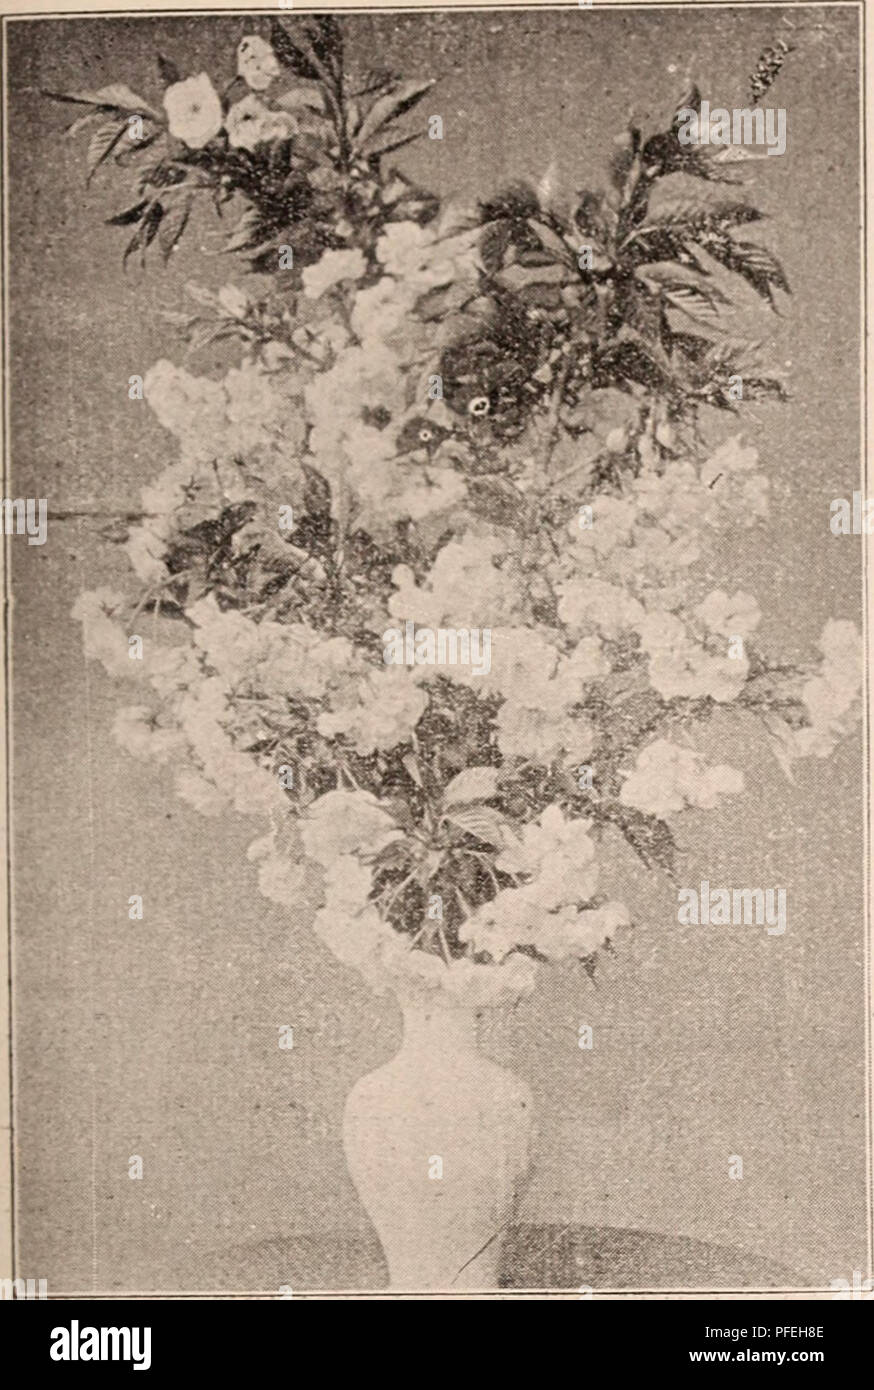 . Catalogo descrittivo della fioritura, alberi ornamentali, arbusti, bulbi, erbe aromatiche, gli alpinisti, alberi da frutto, &amp;c., &amp;c., &amp;c. / Per la vendita dalla Yokohama Vivaio Co., limitata.. Catalogo di vivaio. Catalogo del vivaio di Yokohama Co., Ltd. (1911). 39. TRUXCS pseudo-CERASUS, SHUlOFrGEy, IMIUNUS MTME.-uno di tlic nio.-^t nwourltc giapponese di alberi in fiore, grazie alla iVaoTanee dei suoi fiori, le sue l)eaaty, la.sting quasi una bocca e hlooming a metà inverno spesso nella neve- papà paesaggi, è altamente stimato I'o decorazione in camera sul nuovo Y'orecchio il DAV.s. Frnils sono anche molto facilmente sollevato e fatto in Foto Stock